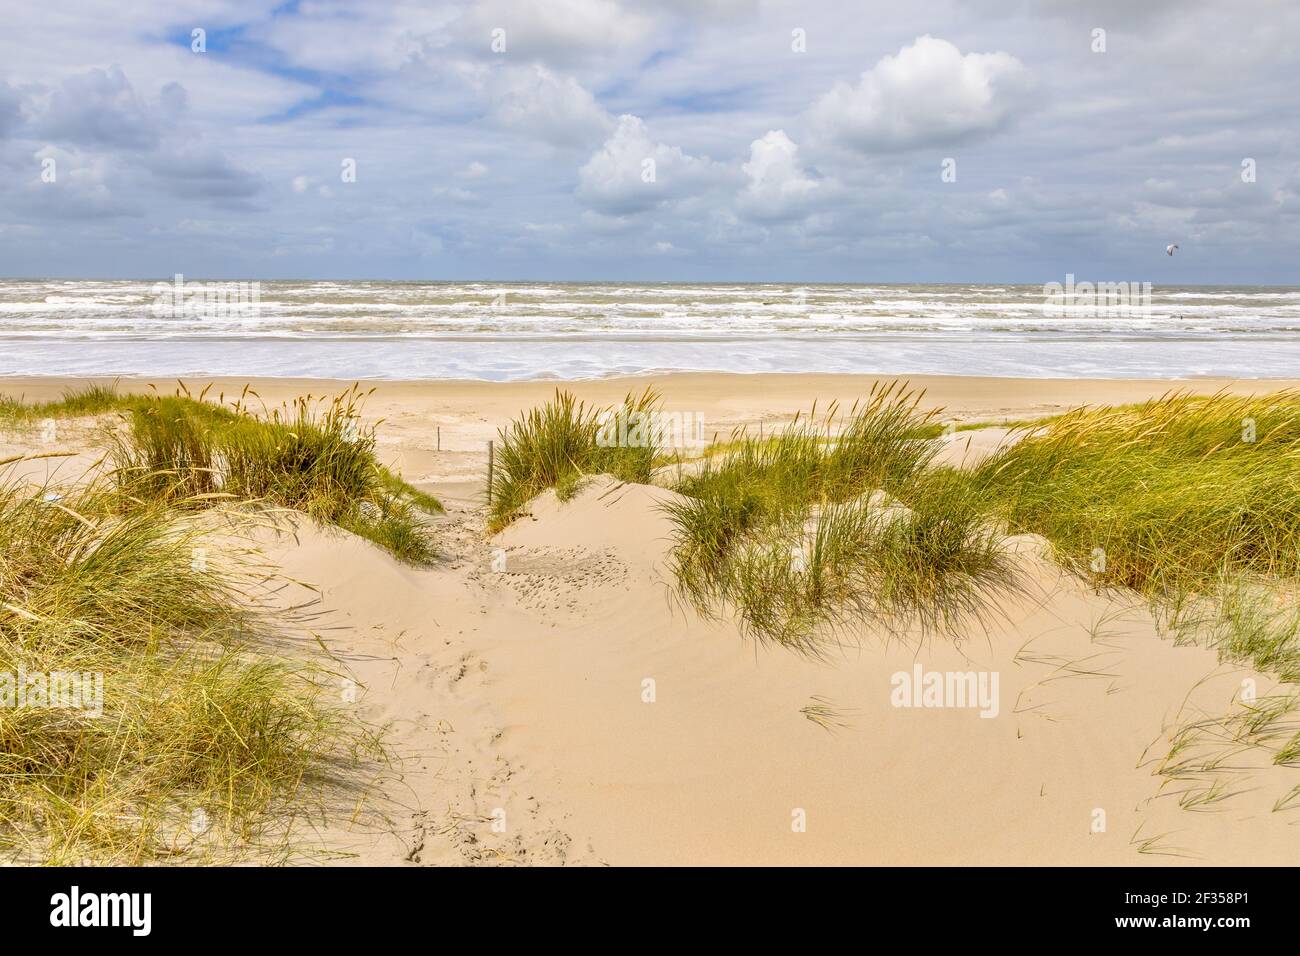 Landschaftsansicht der Sanddüne an der Nordseeküste bei Wijk aan Zee, Noord Holland Provinz, Niederlande. Landschaft Szene der europäischen Natur. Stockfoto